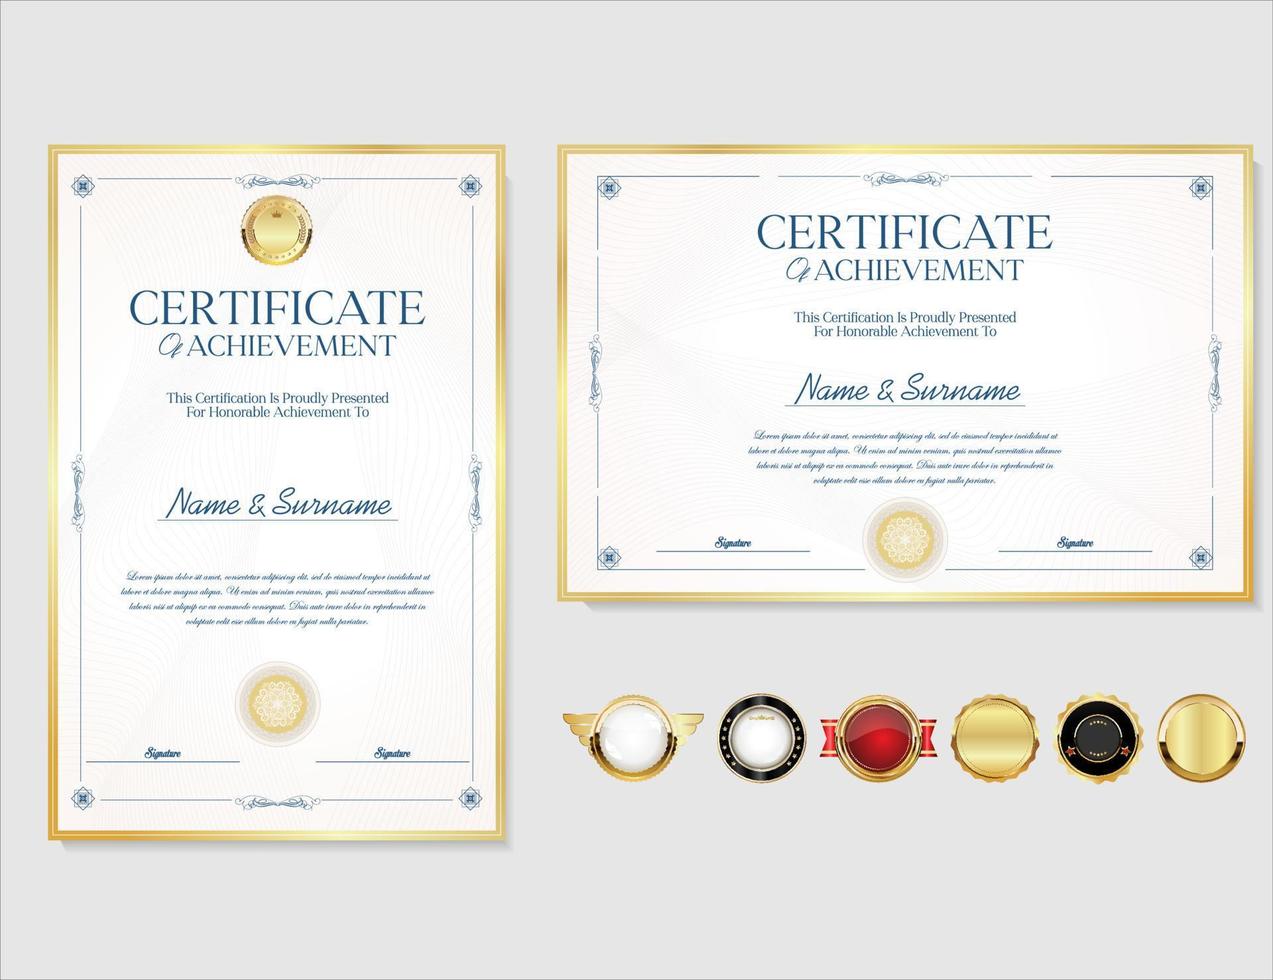 elegant certificaat of diploma retro wijnoogst ontwerp vector